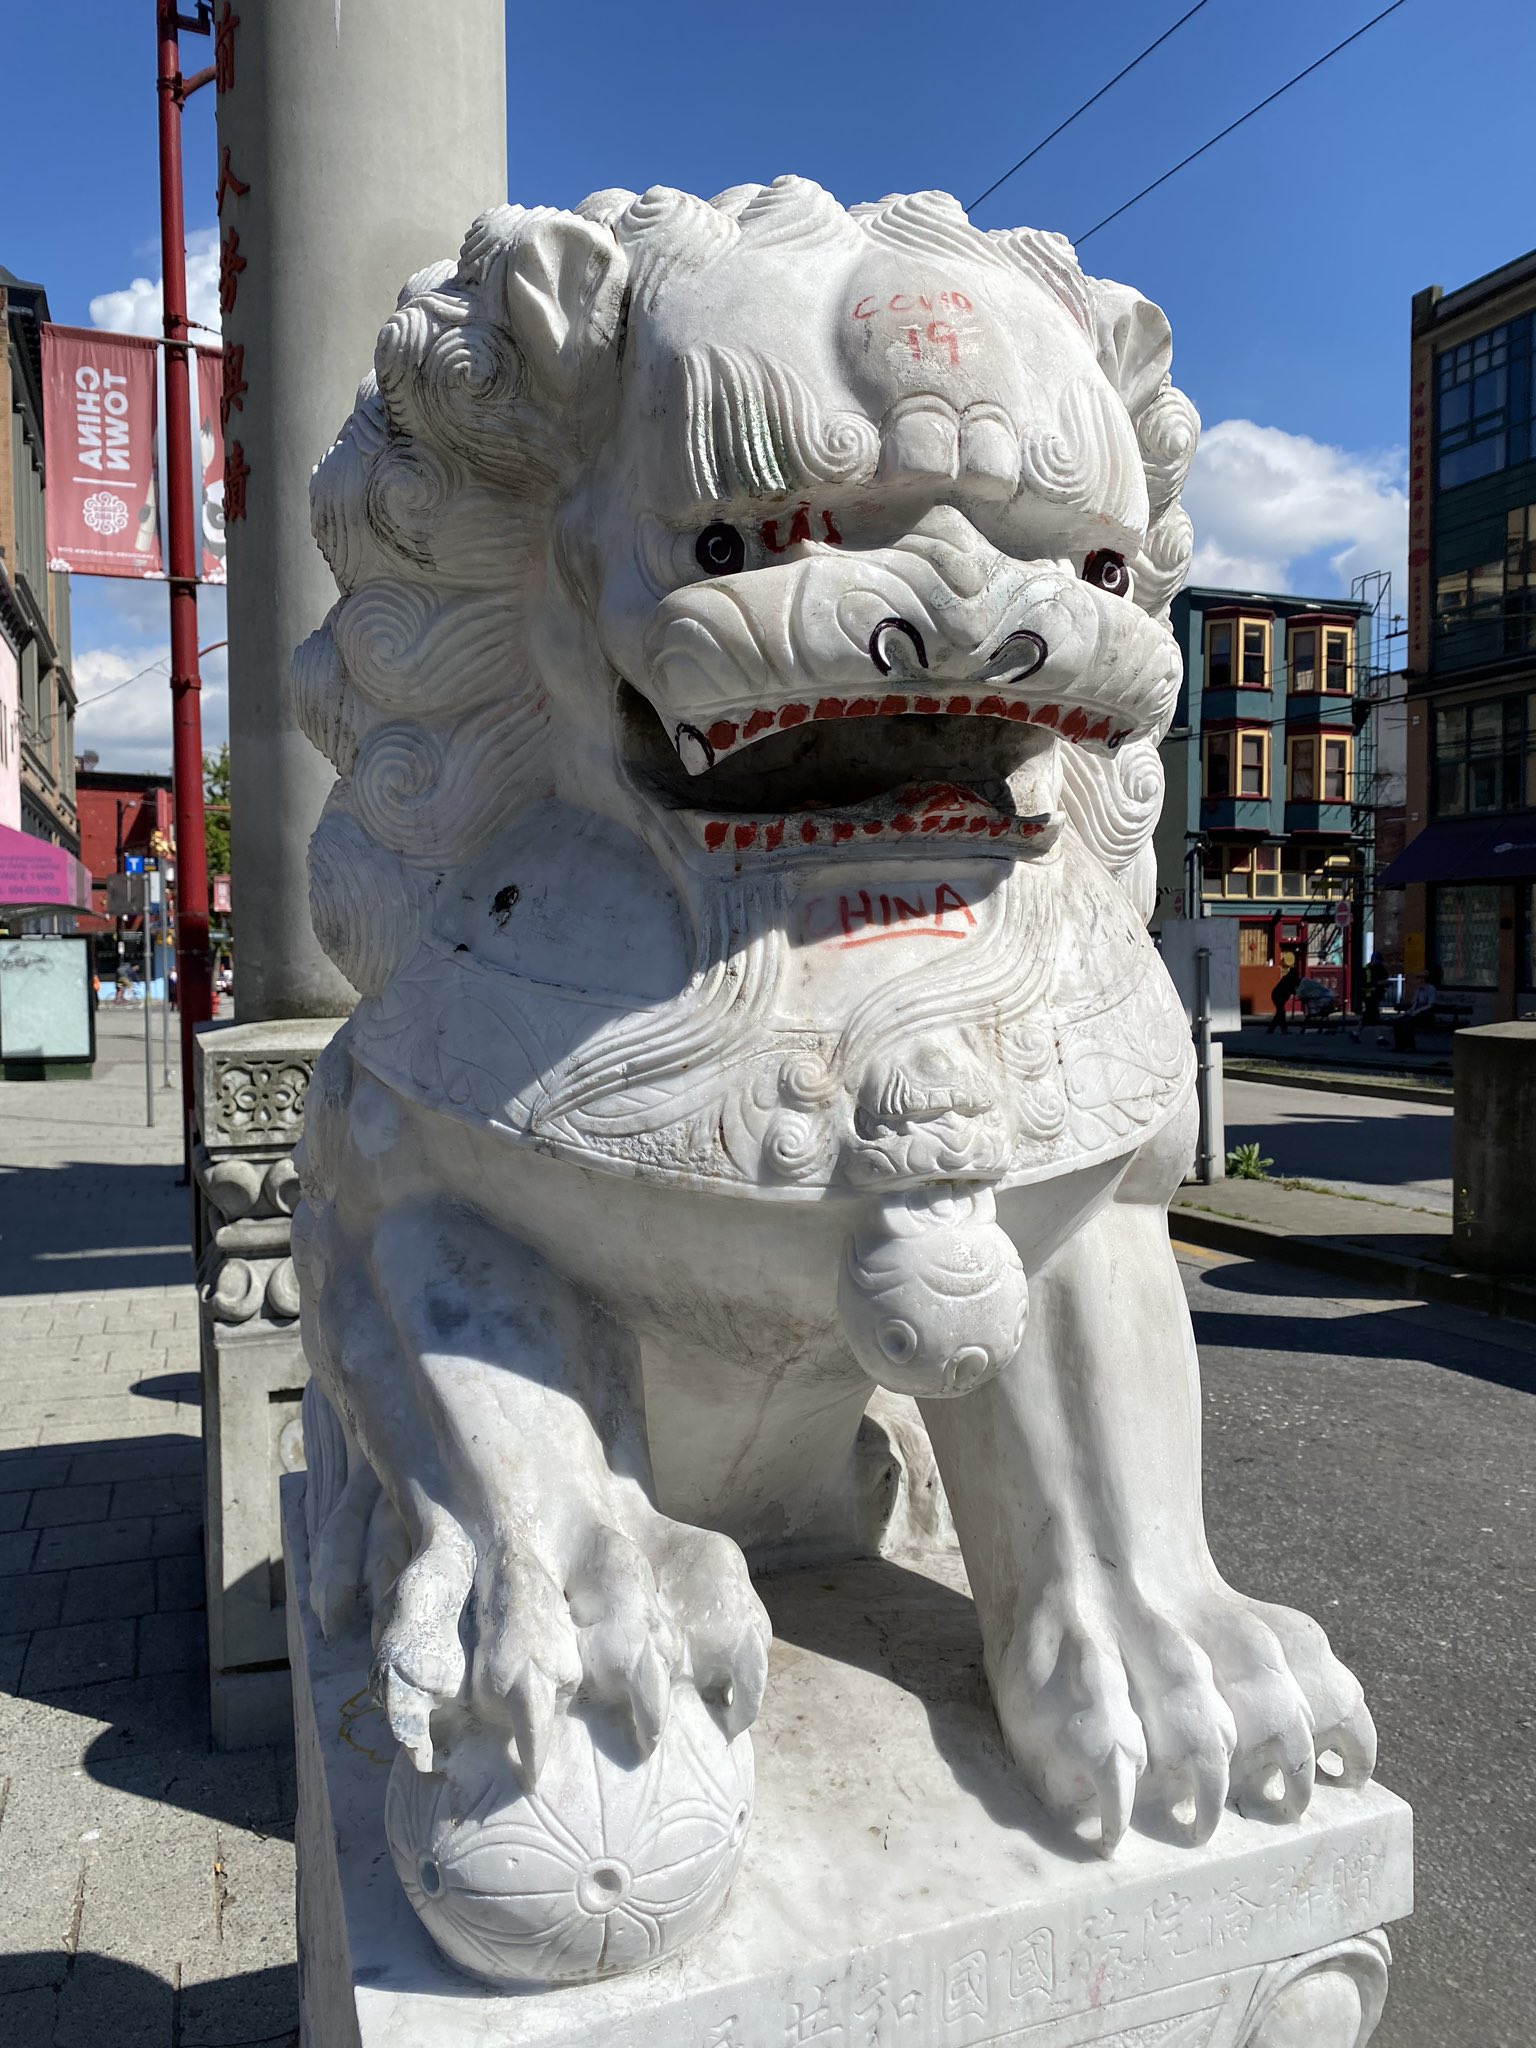 Vancouver lion vandalized